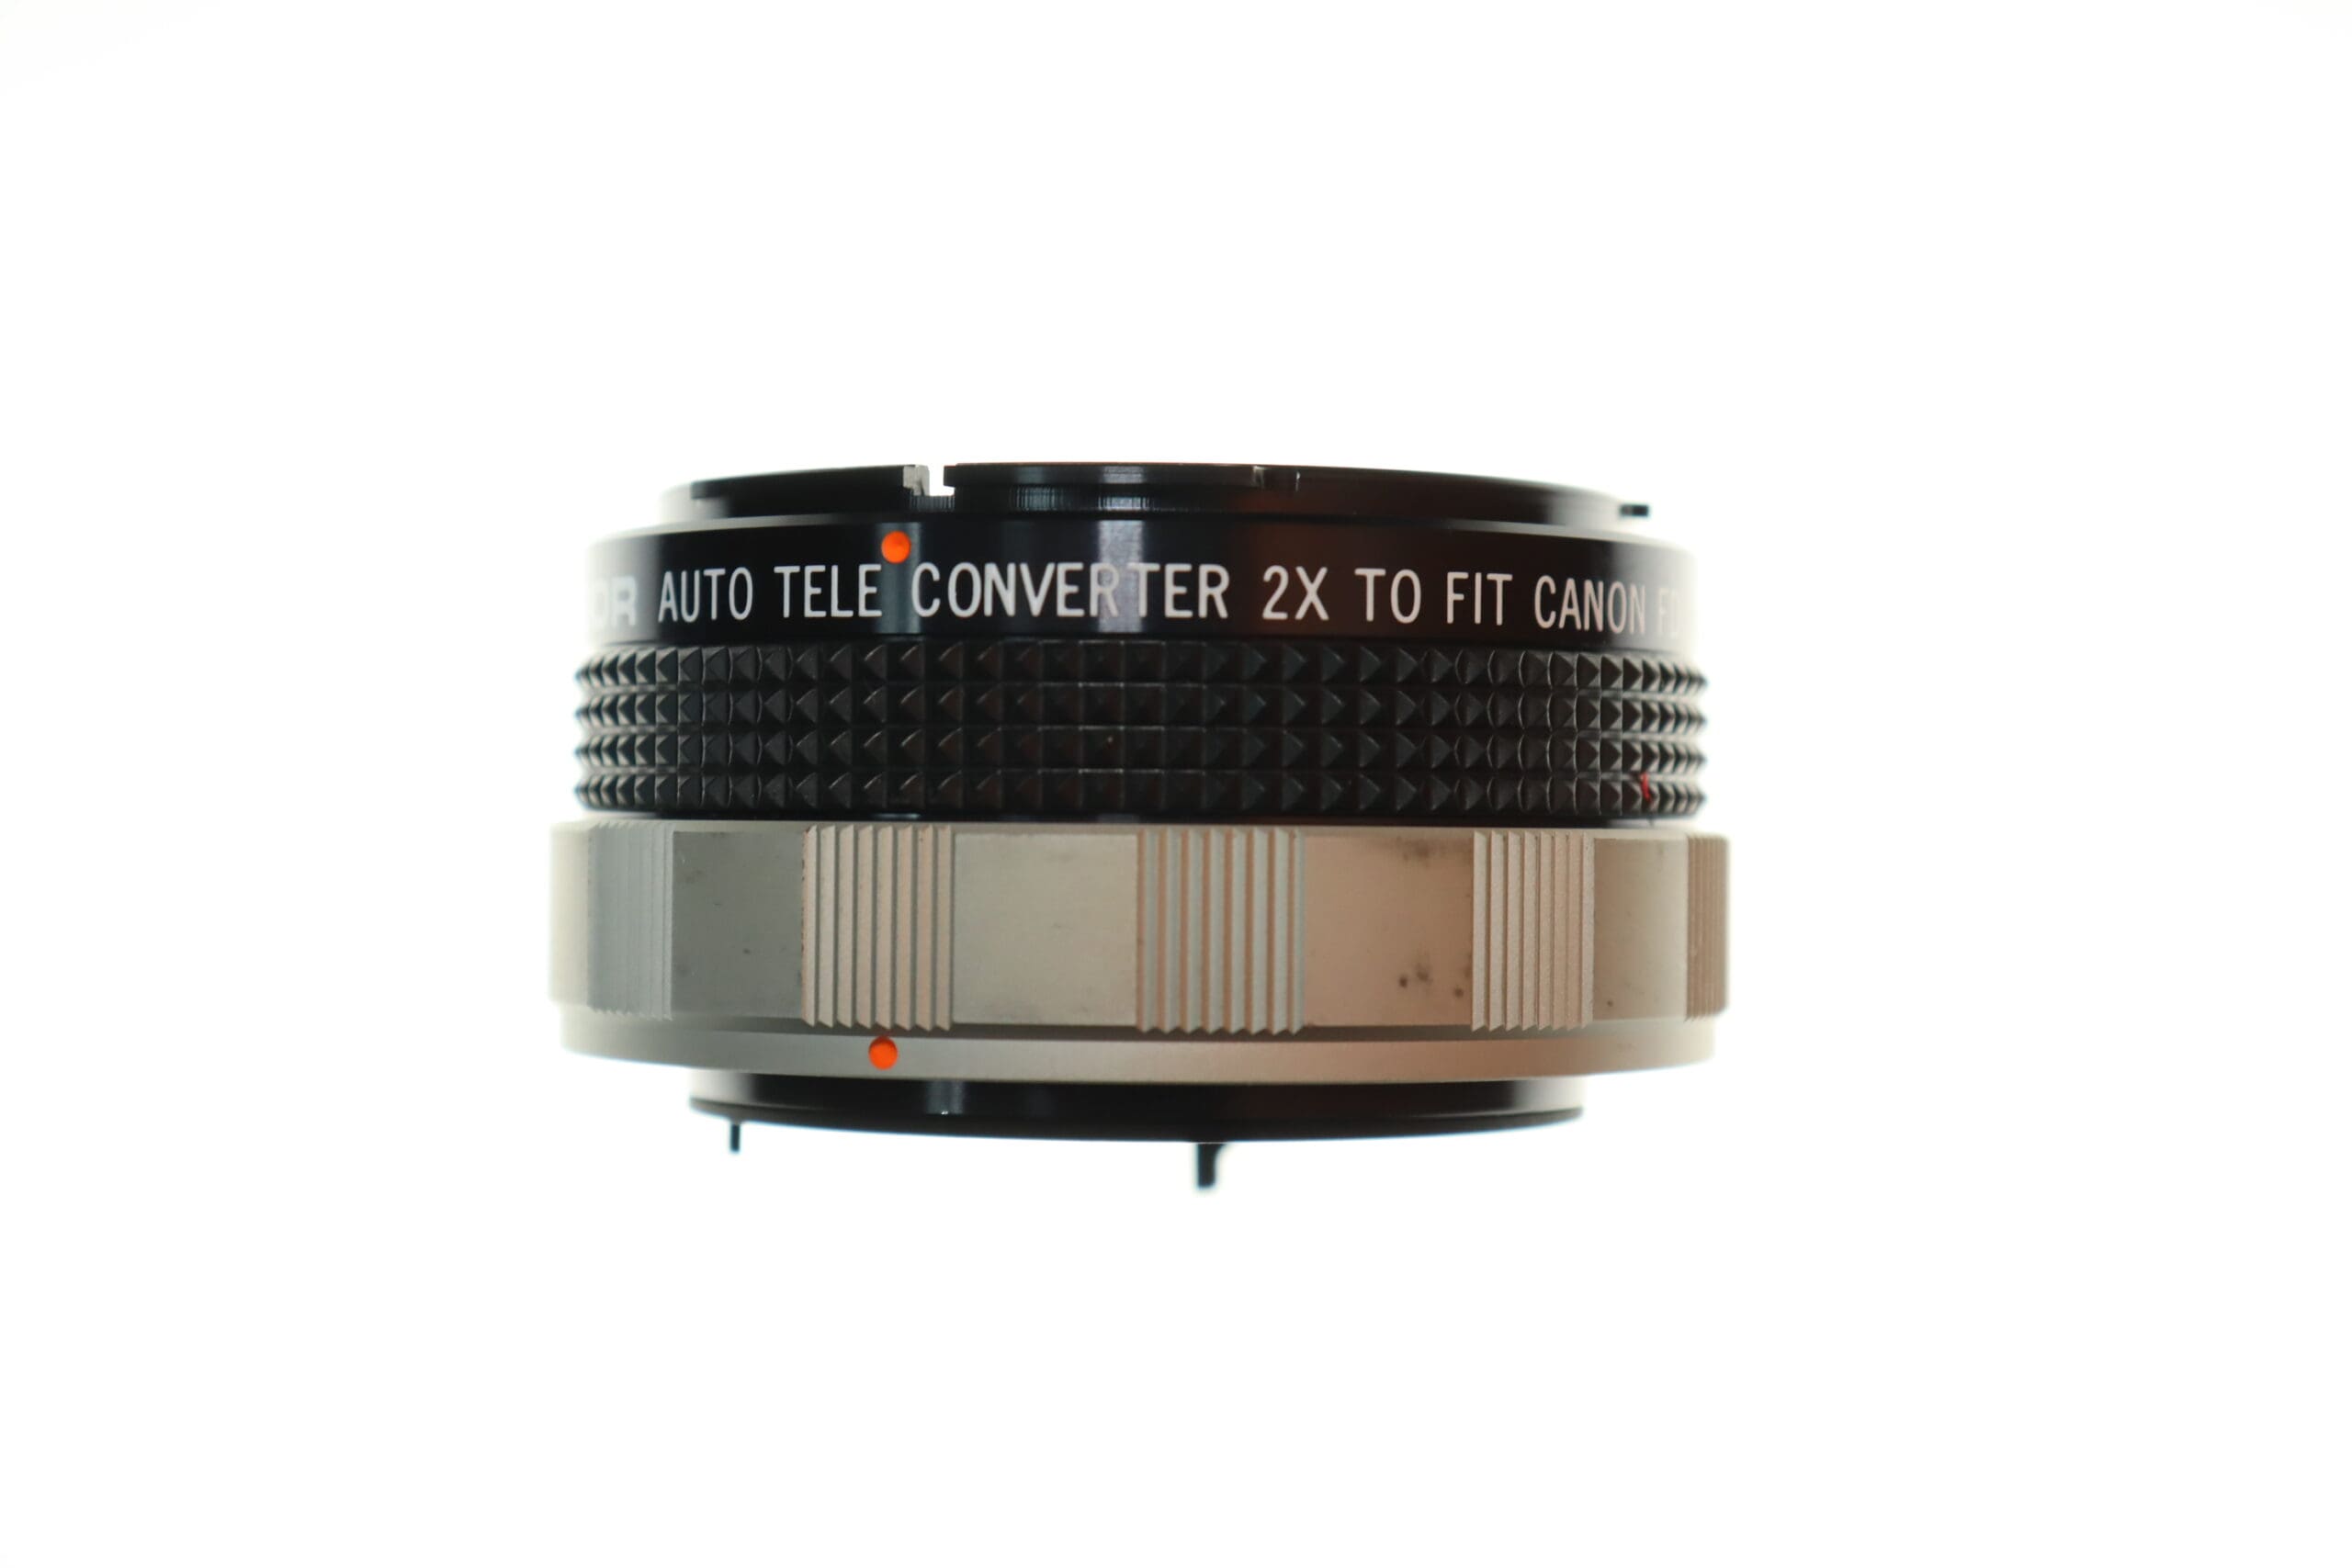 Canon Soligor Auto Tele Converter 2x Canon FD Lens Mount